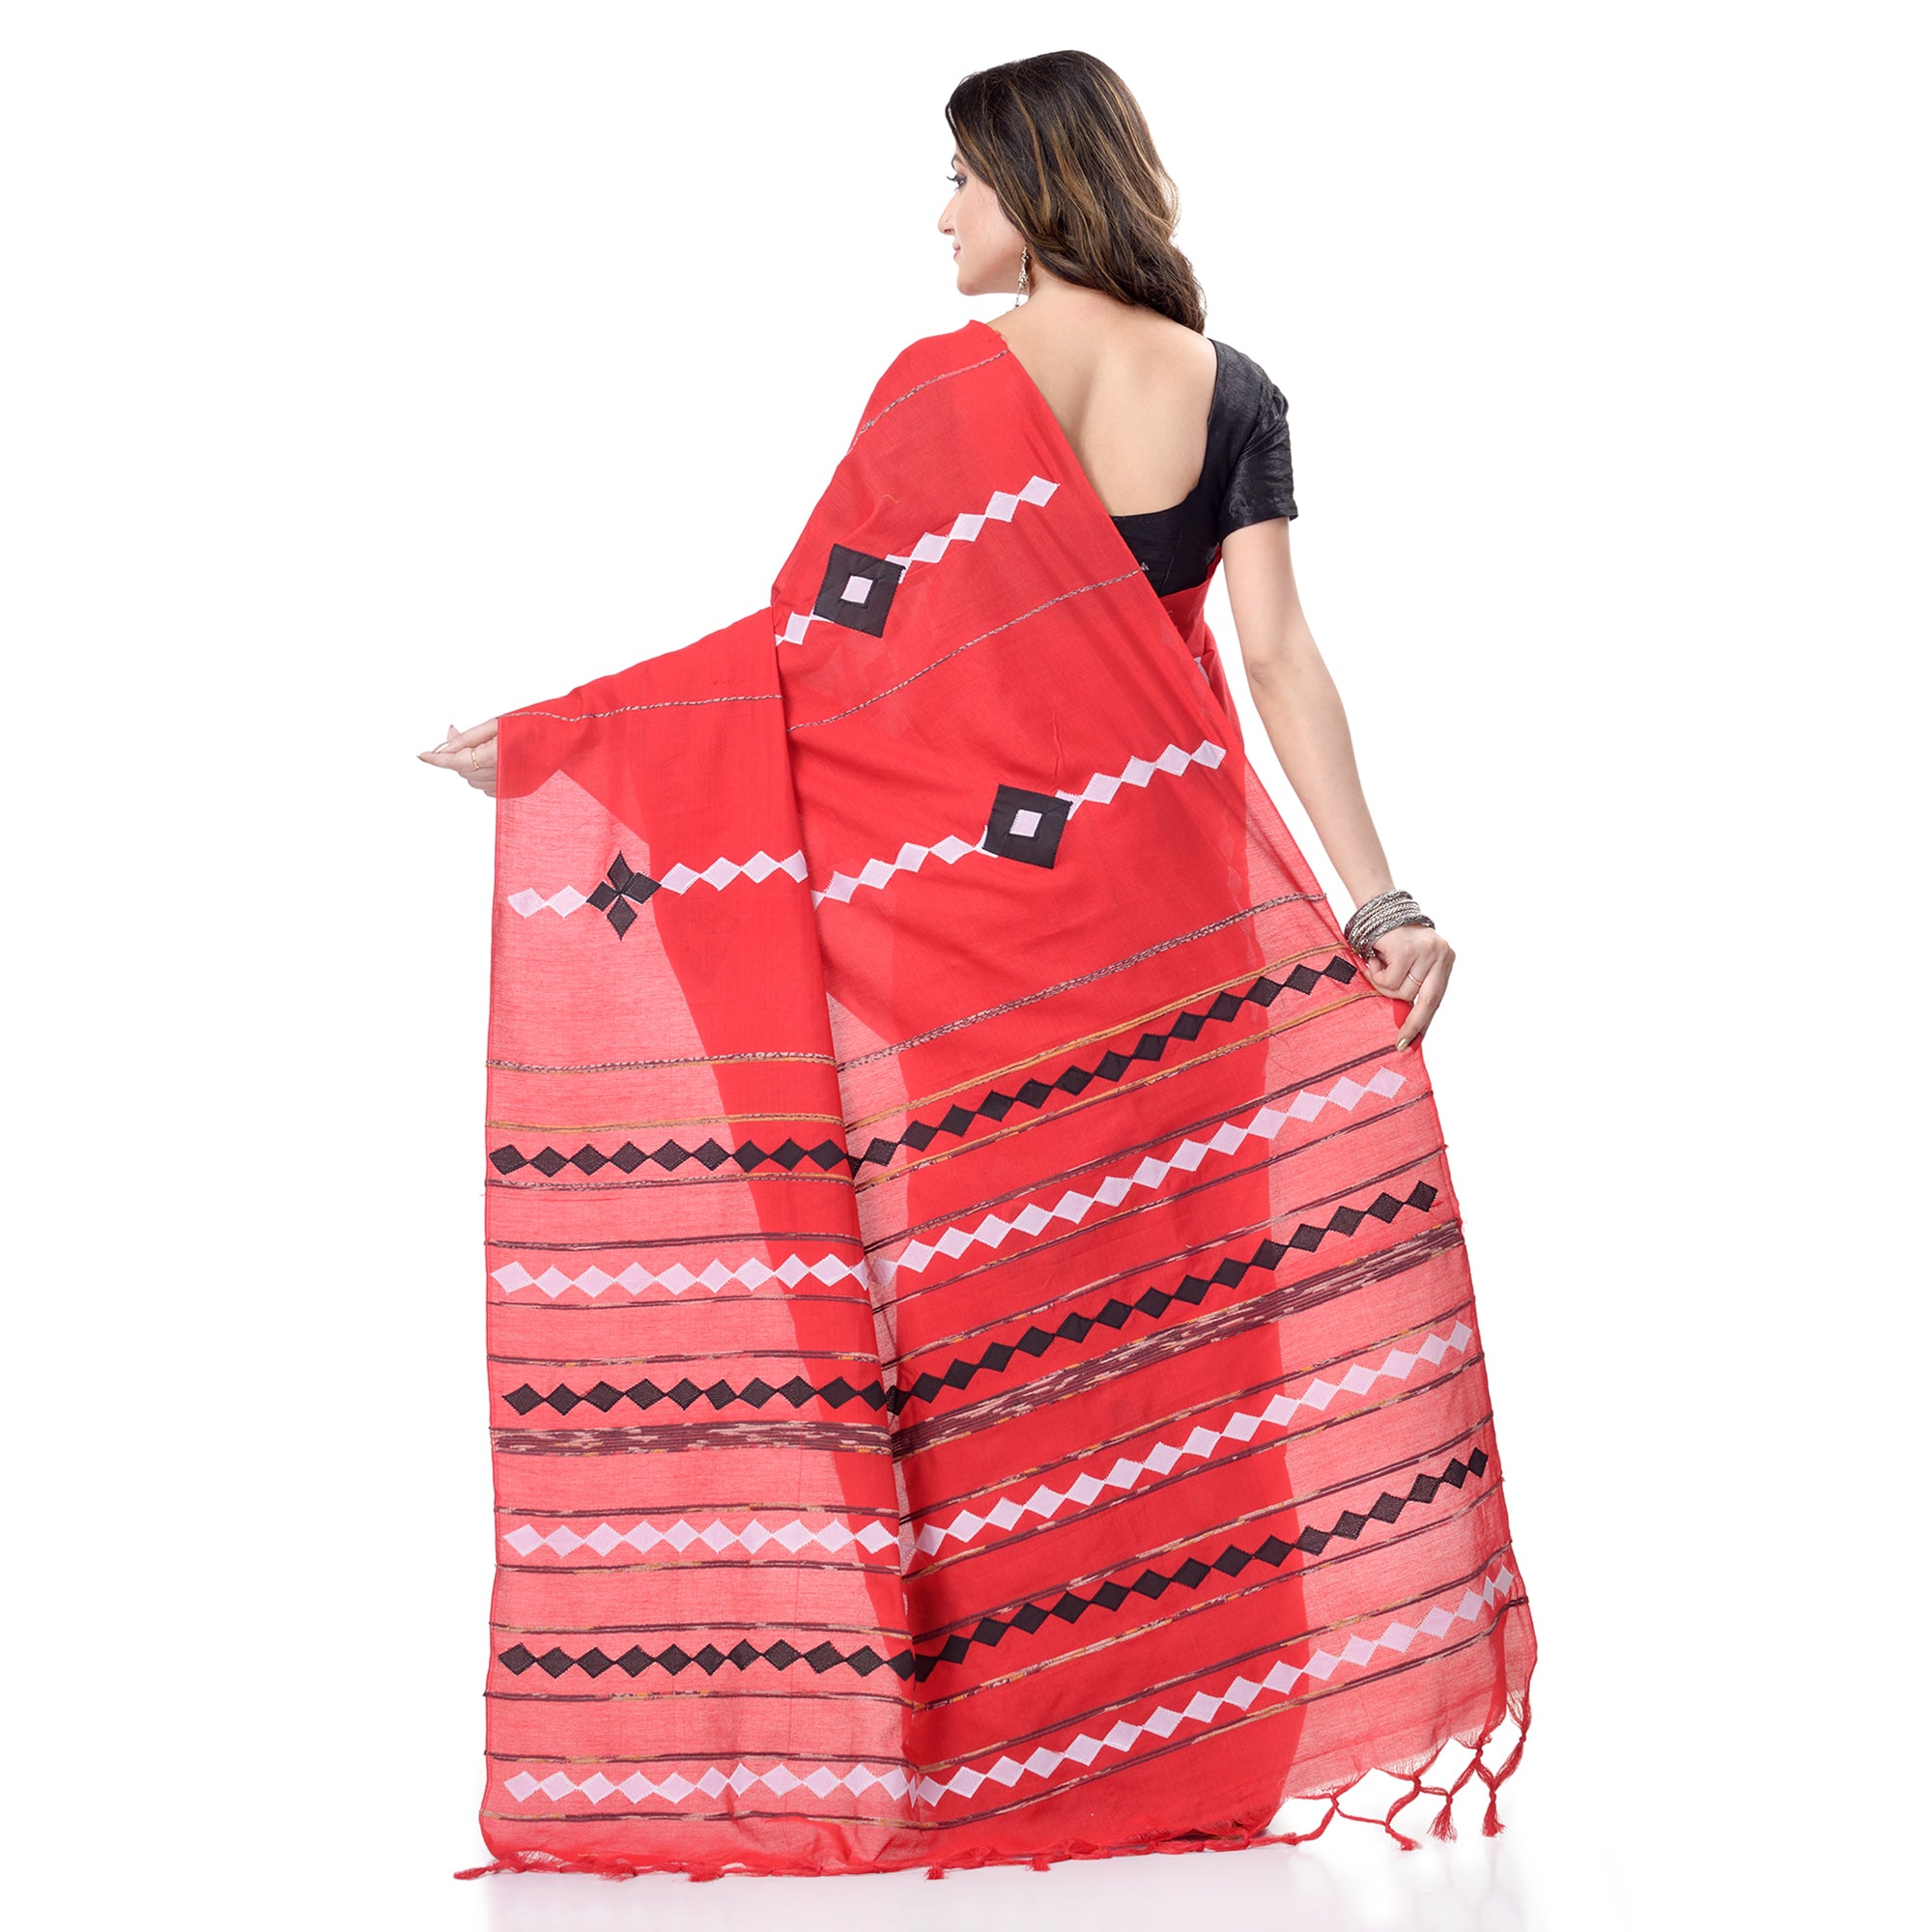 Women's Handspun Cotton Red Handloom Applique Saree - Piyari Fashion